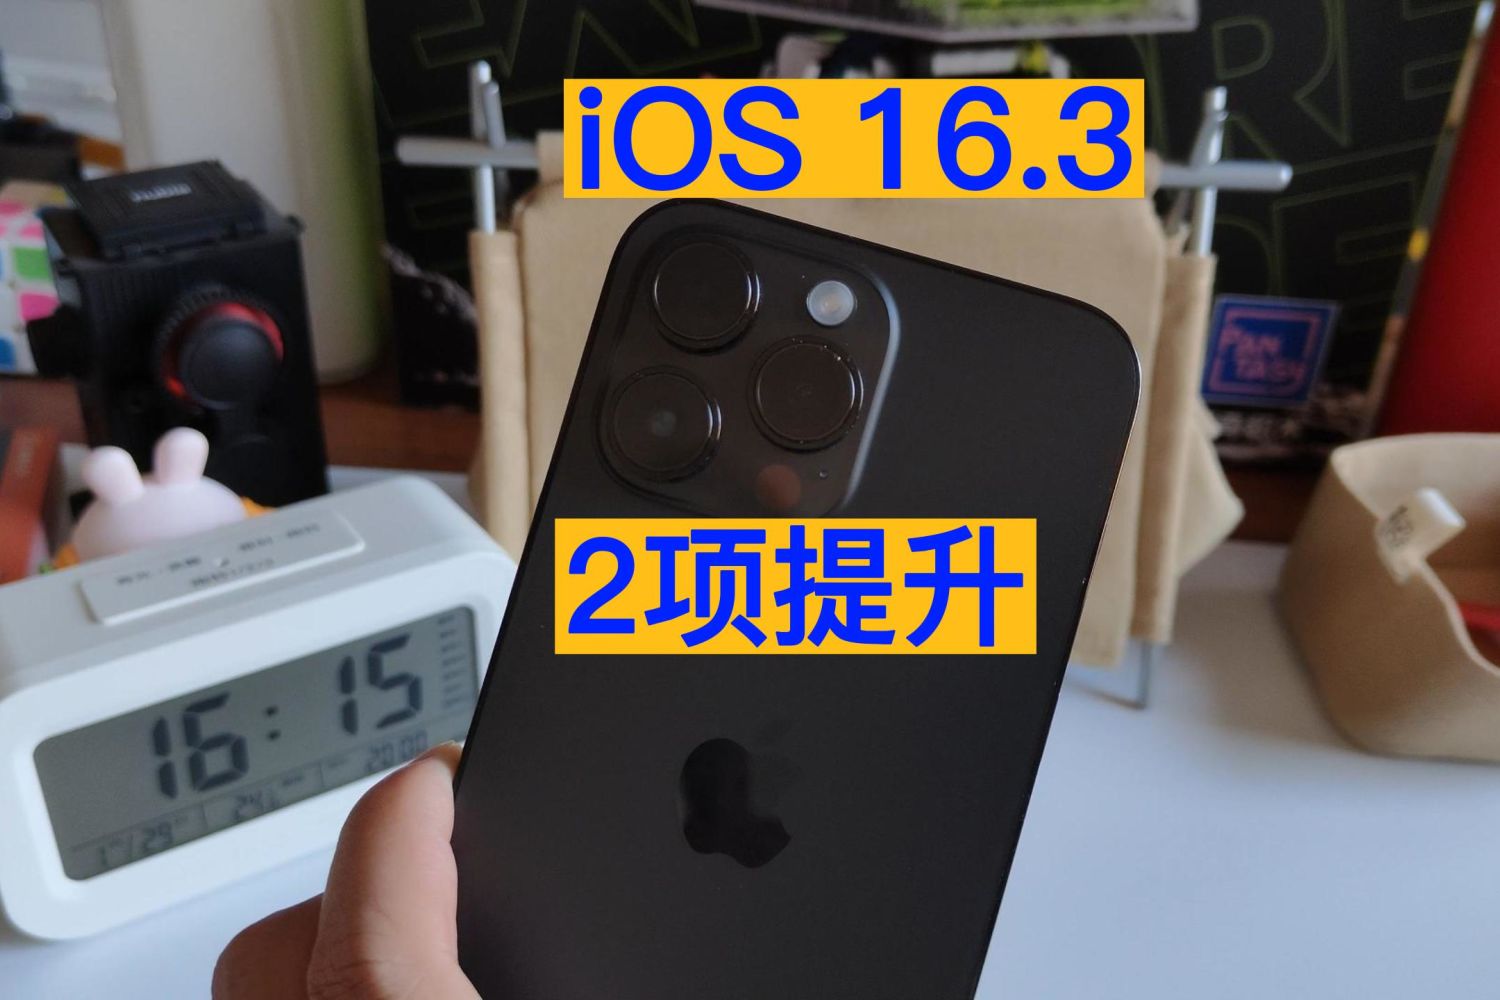 2项提升 多个缺点 iOS16.3值得升级吗？